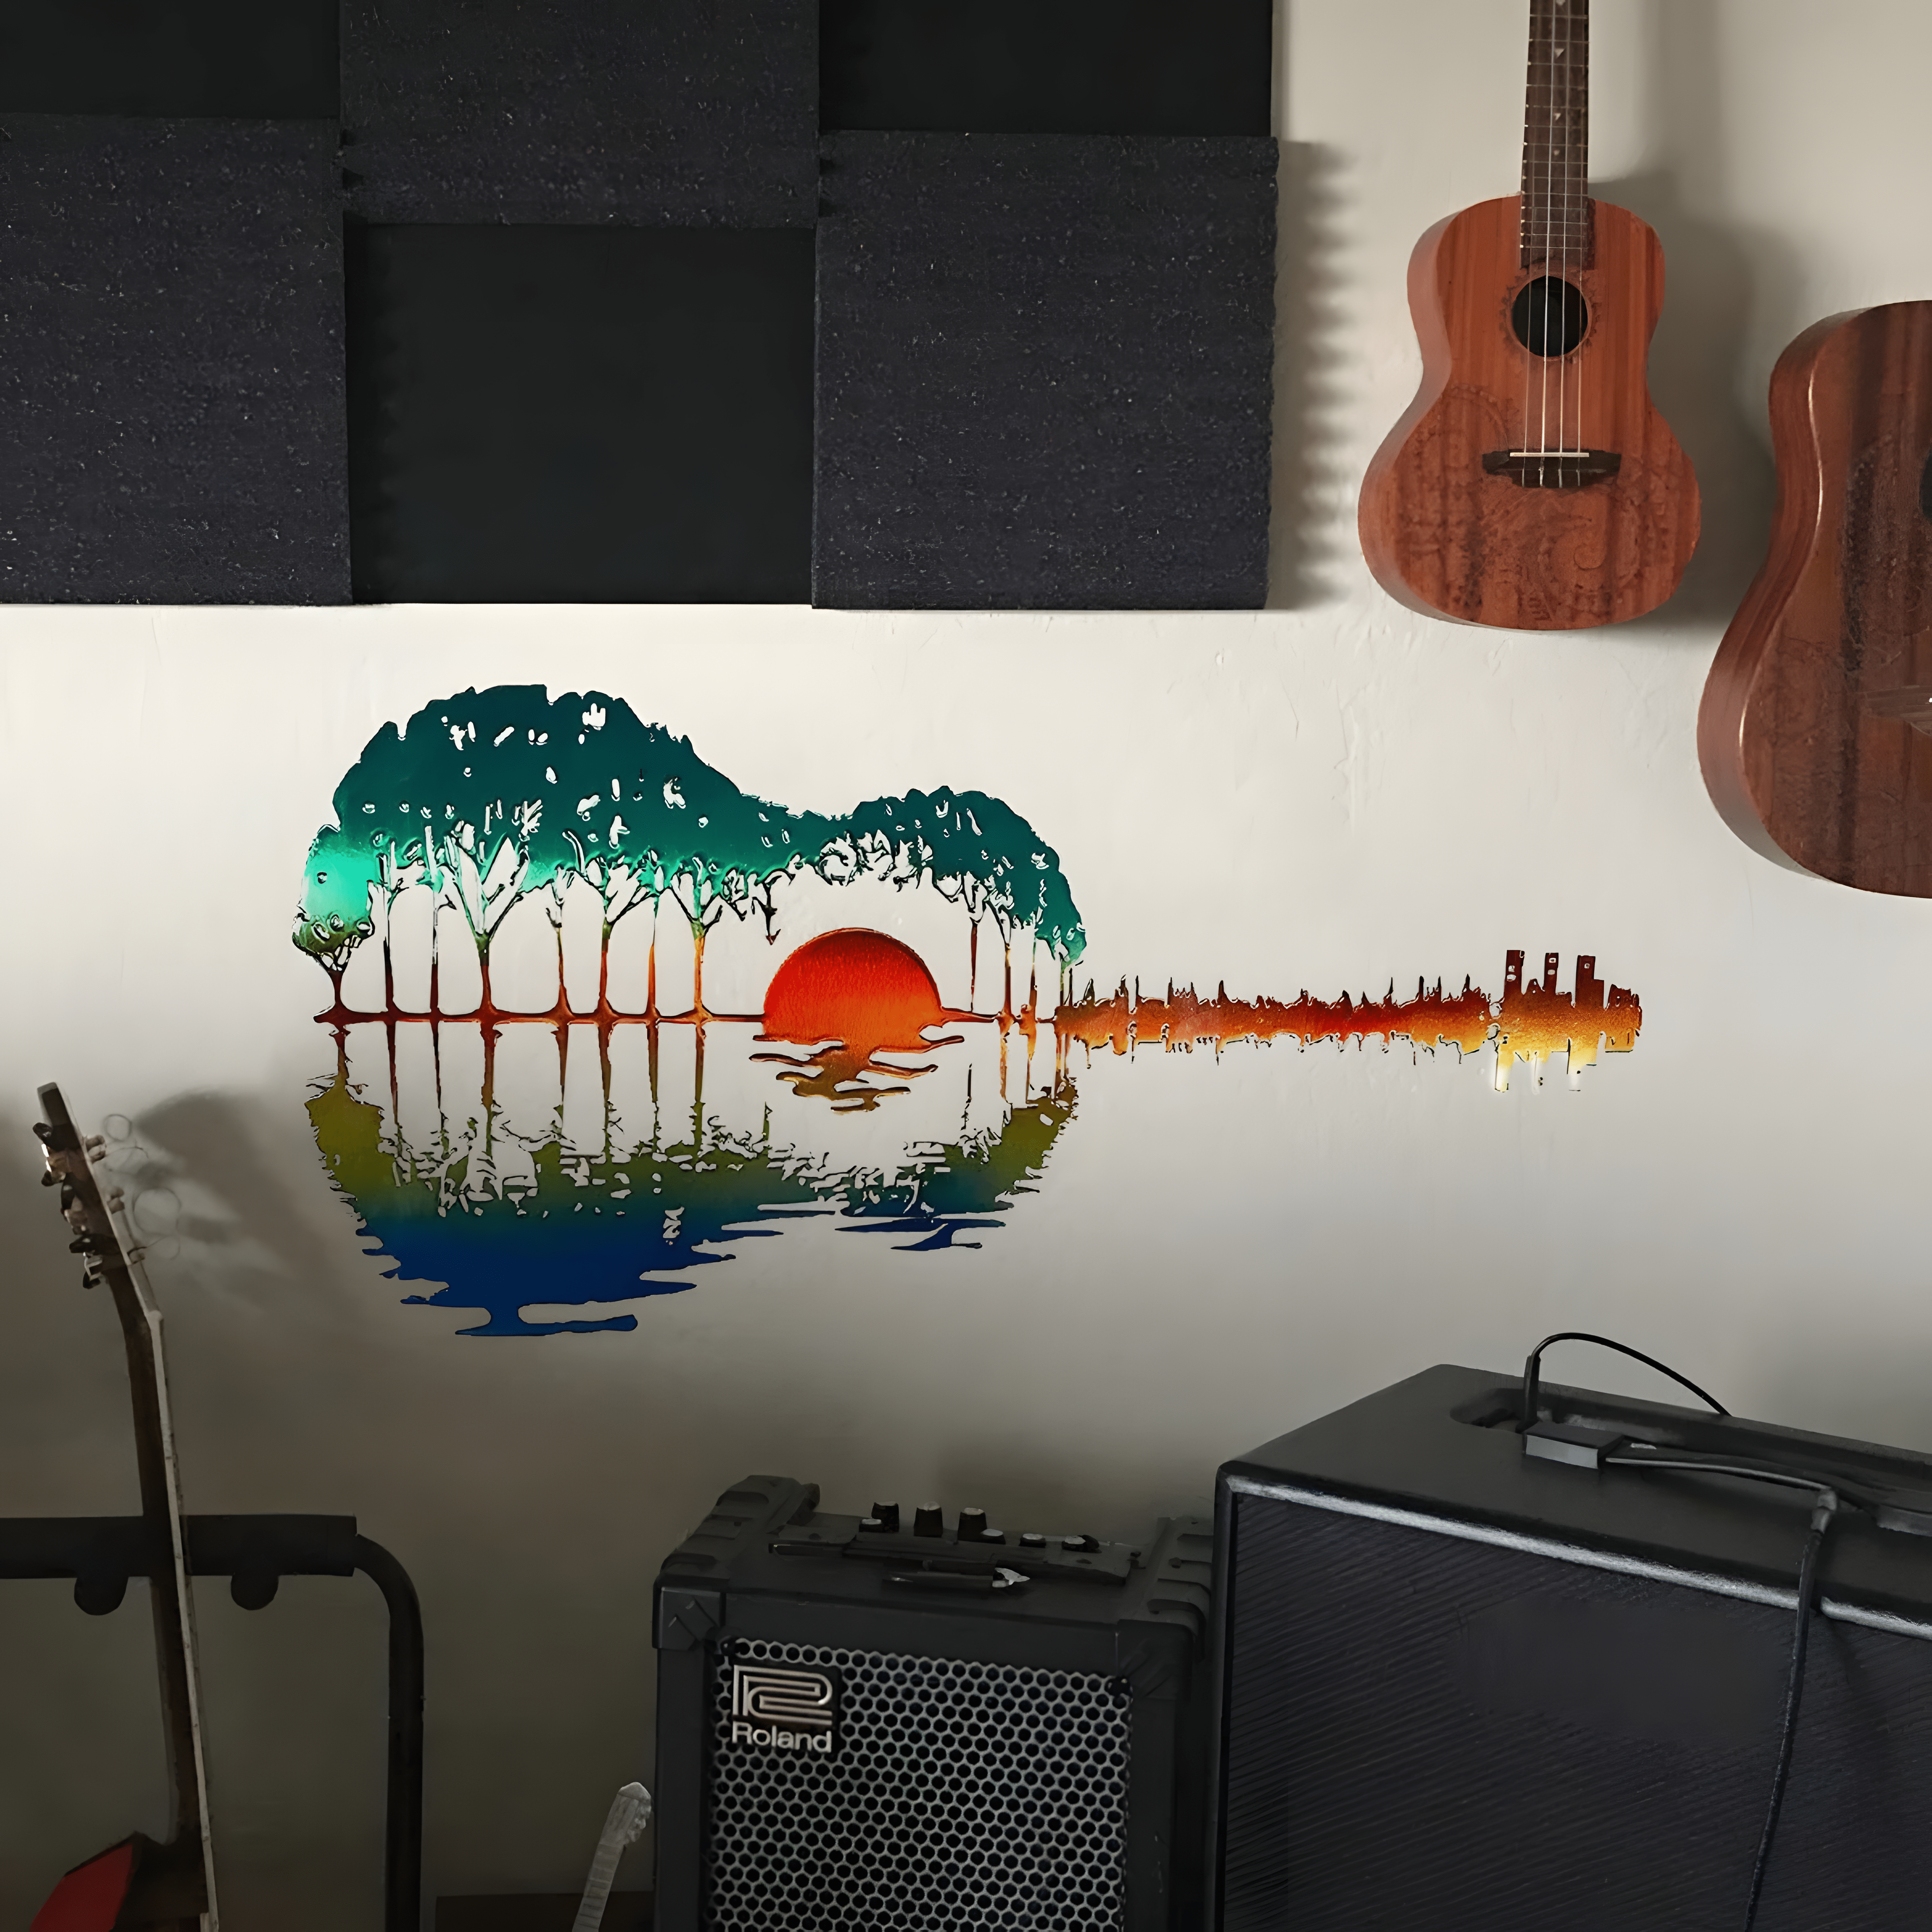 Guitar Wall Art